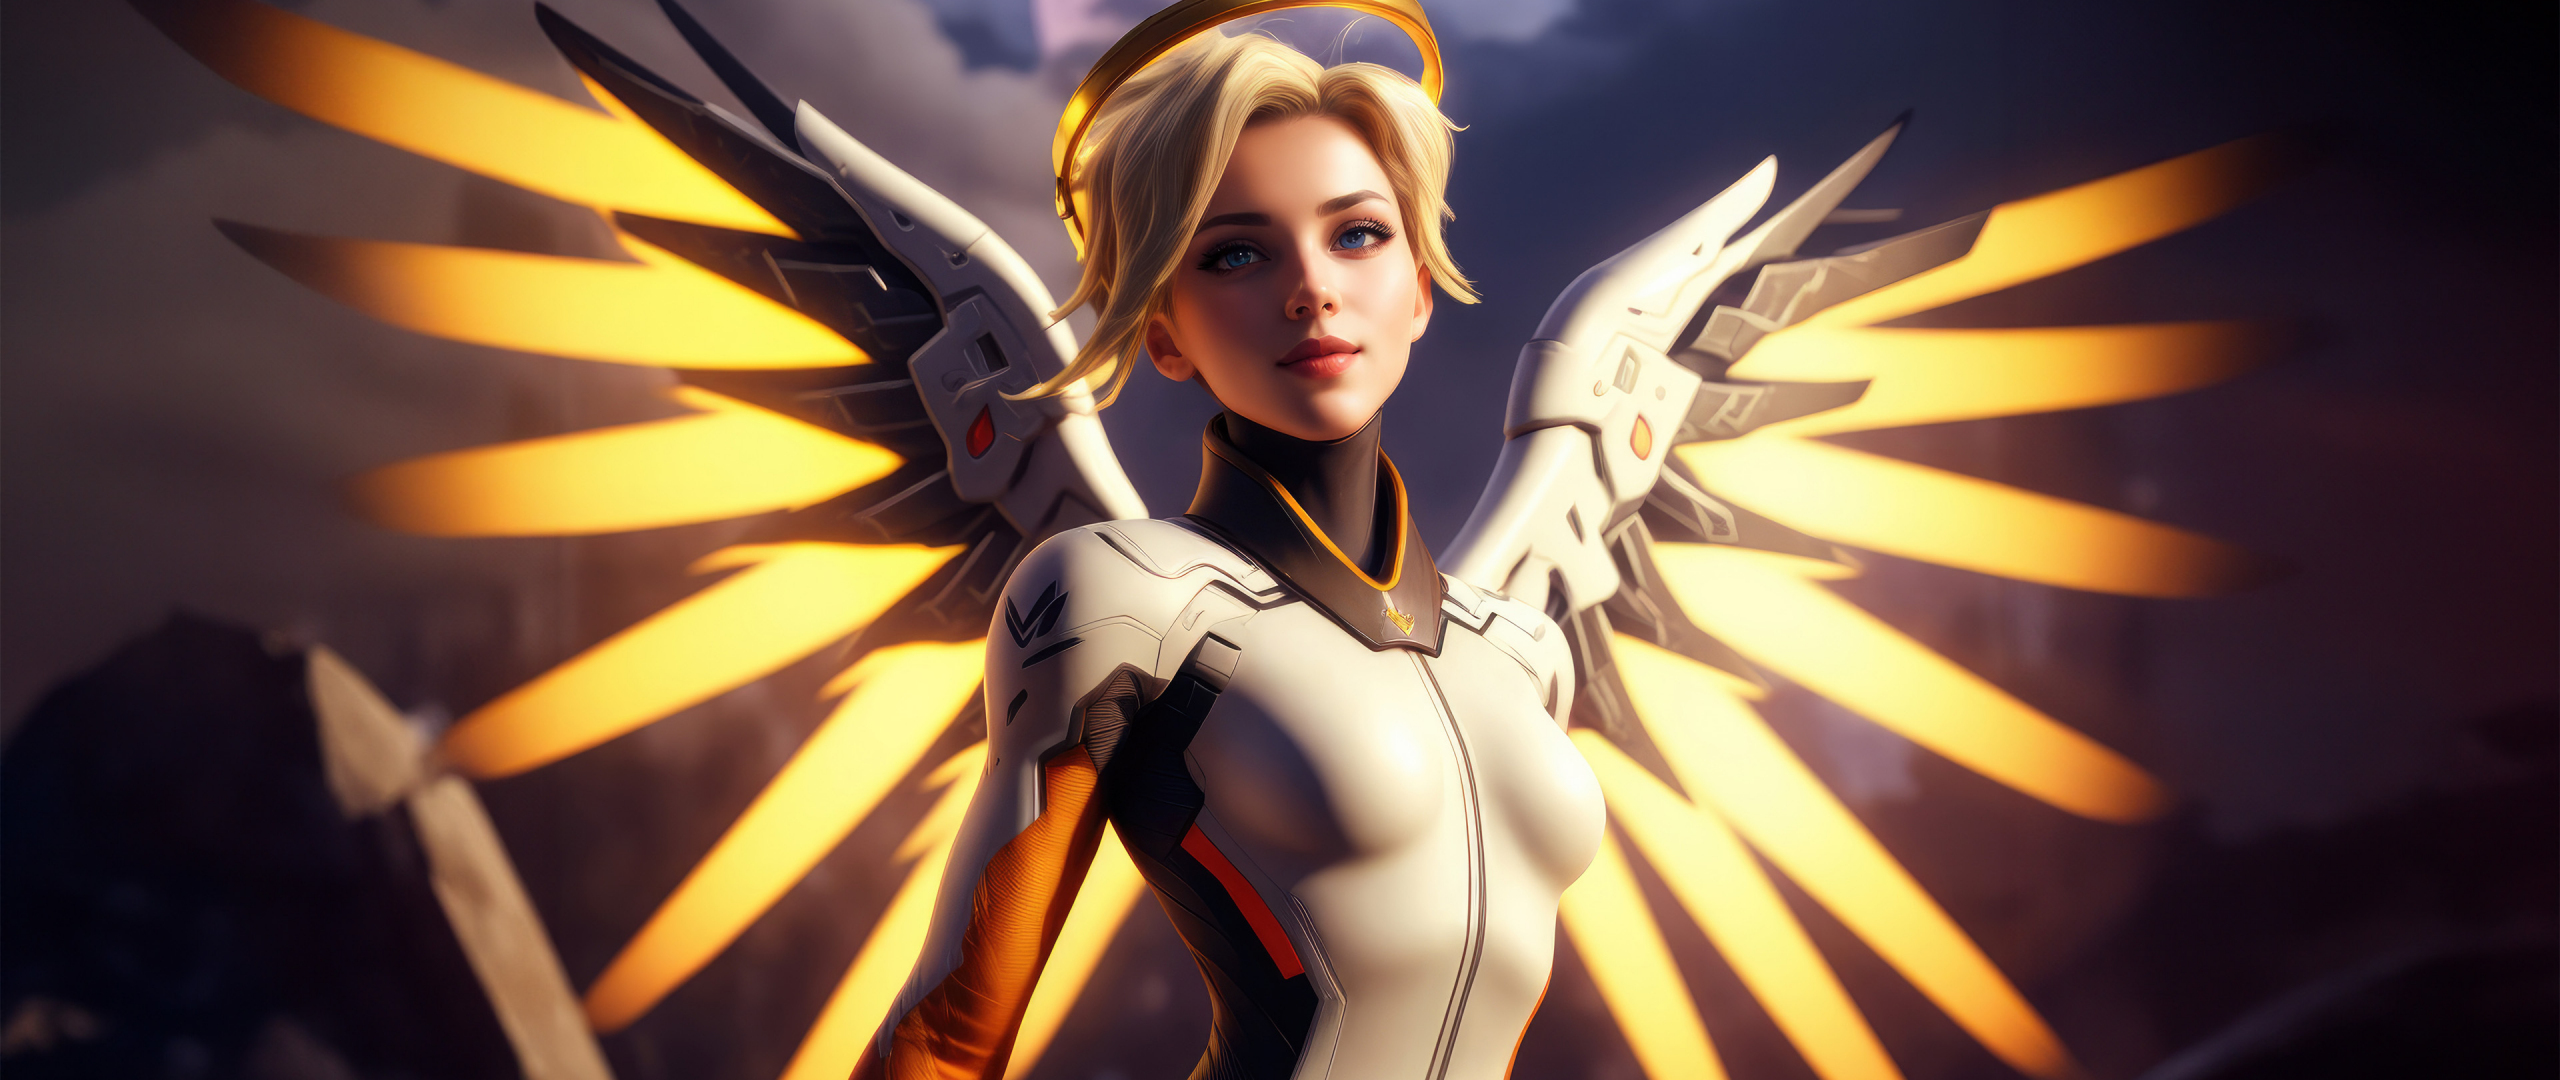 Mercy of Overwatch, The Swiss Angel, golden wings, 2560x1080 wallpaper